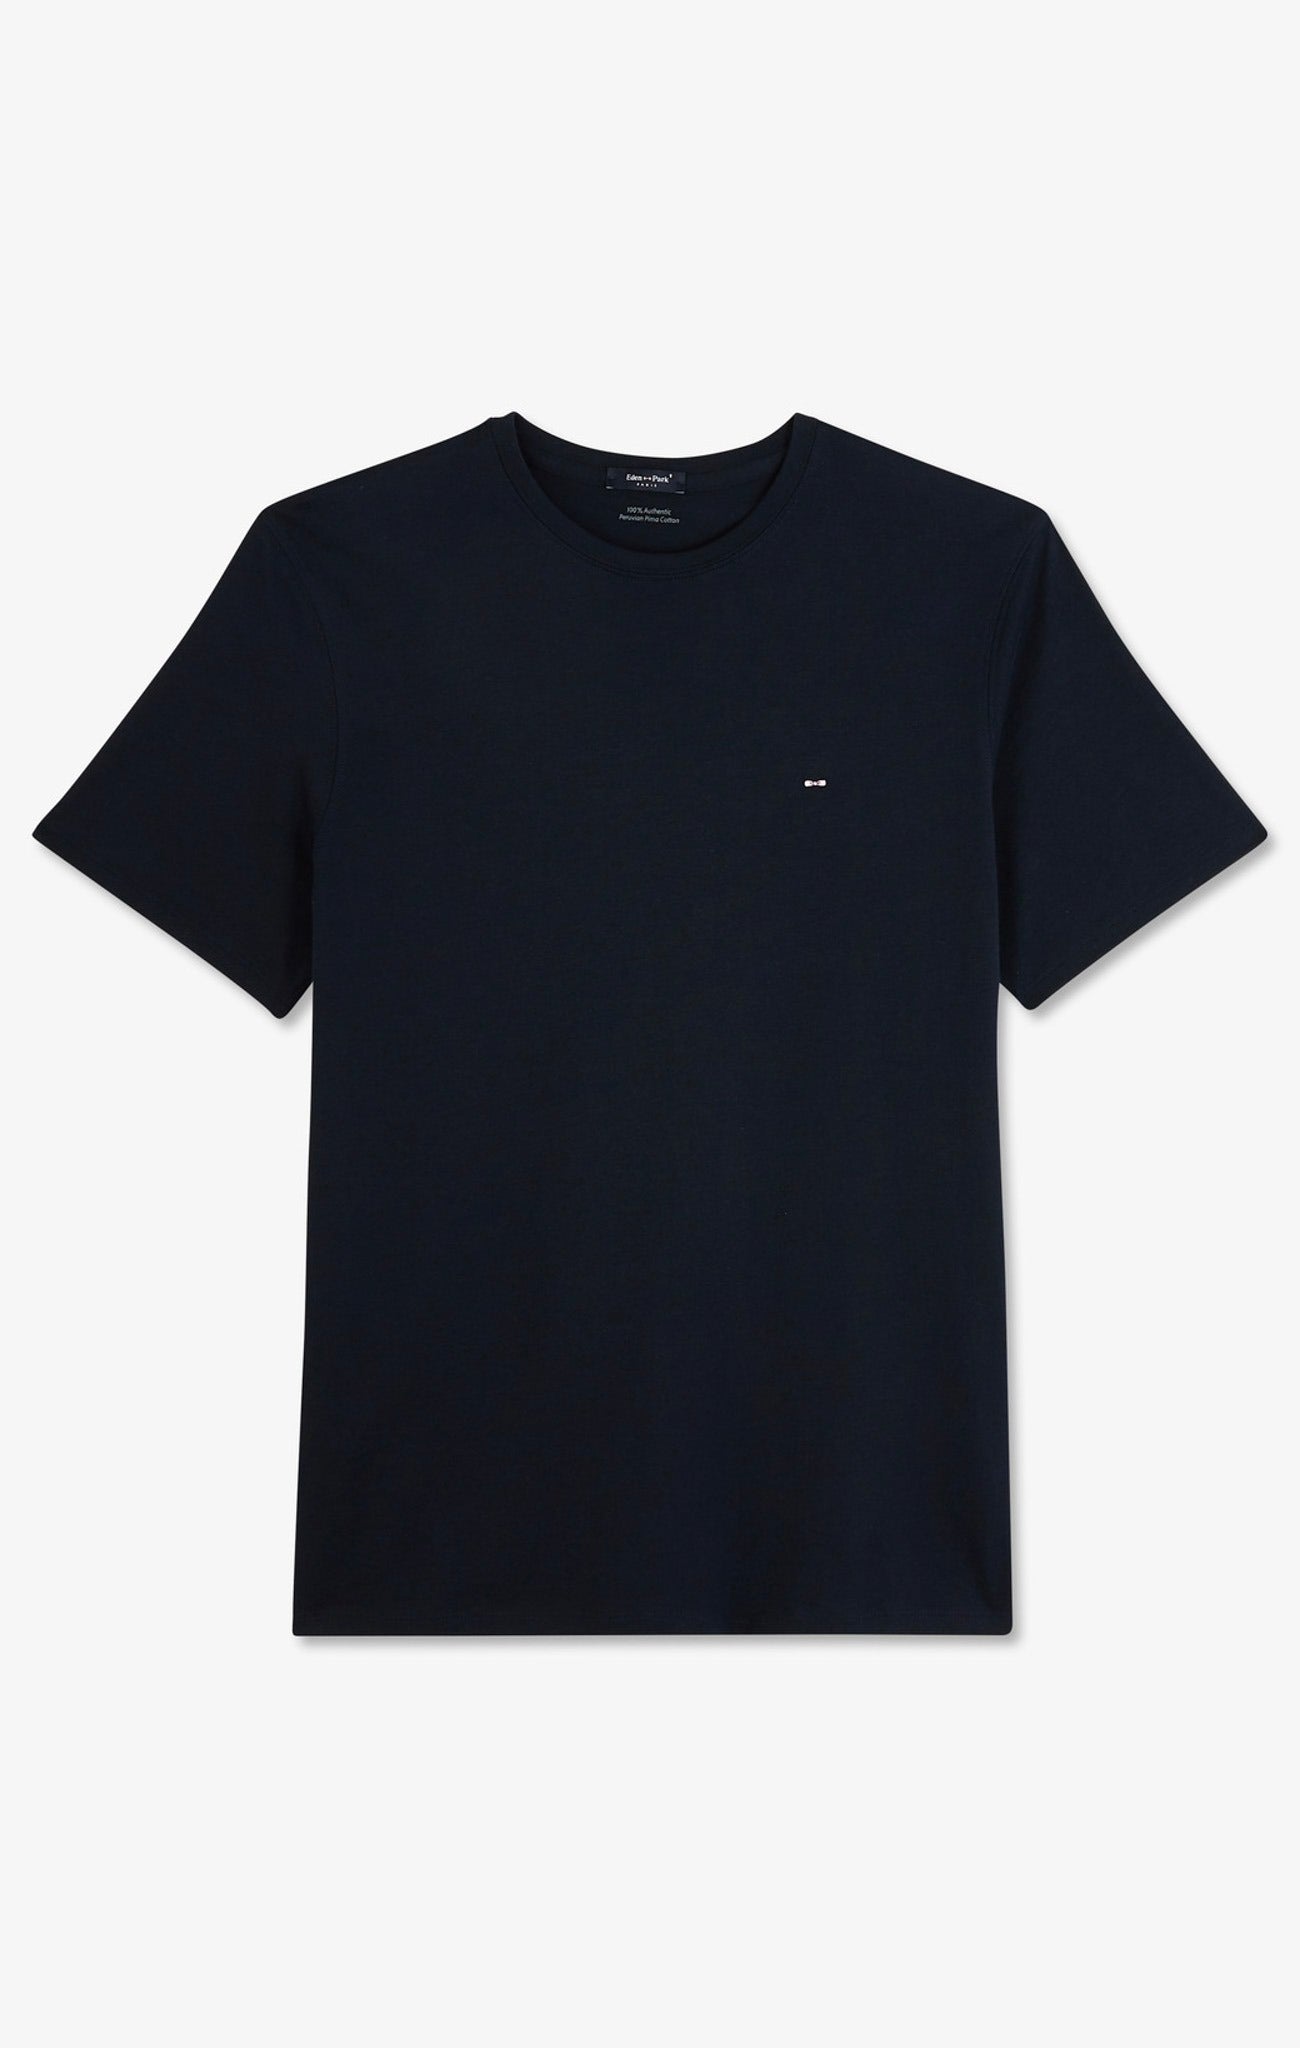 T-shirt bleu marine col rond à manches courtes - Image 2